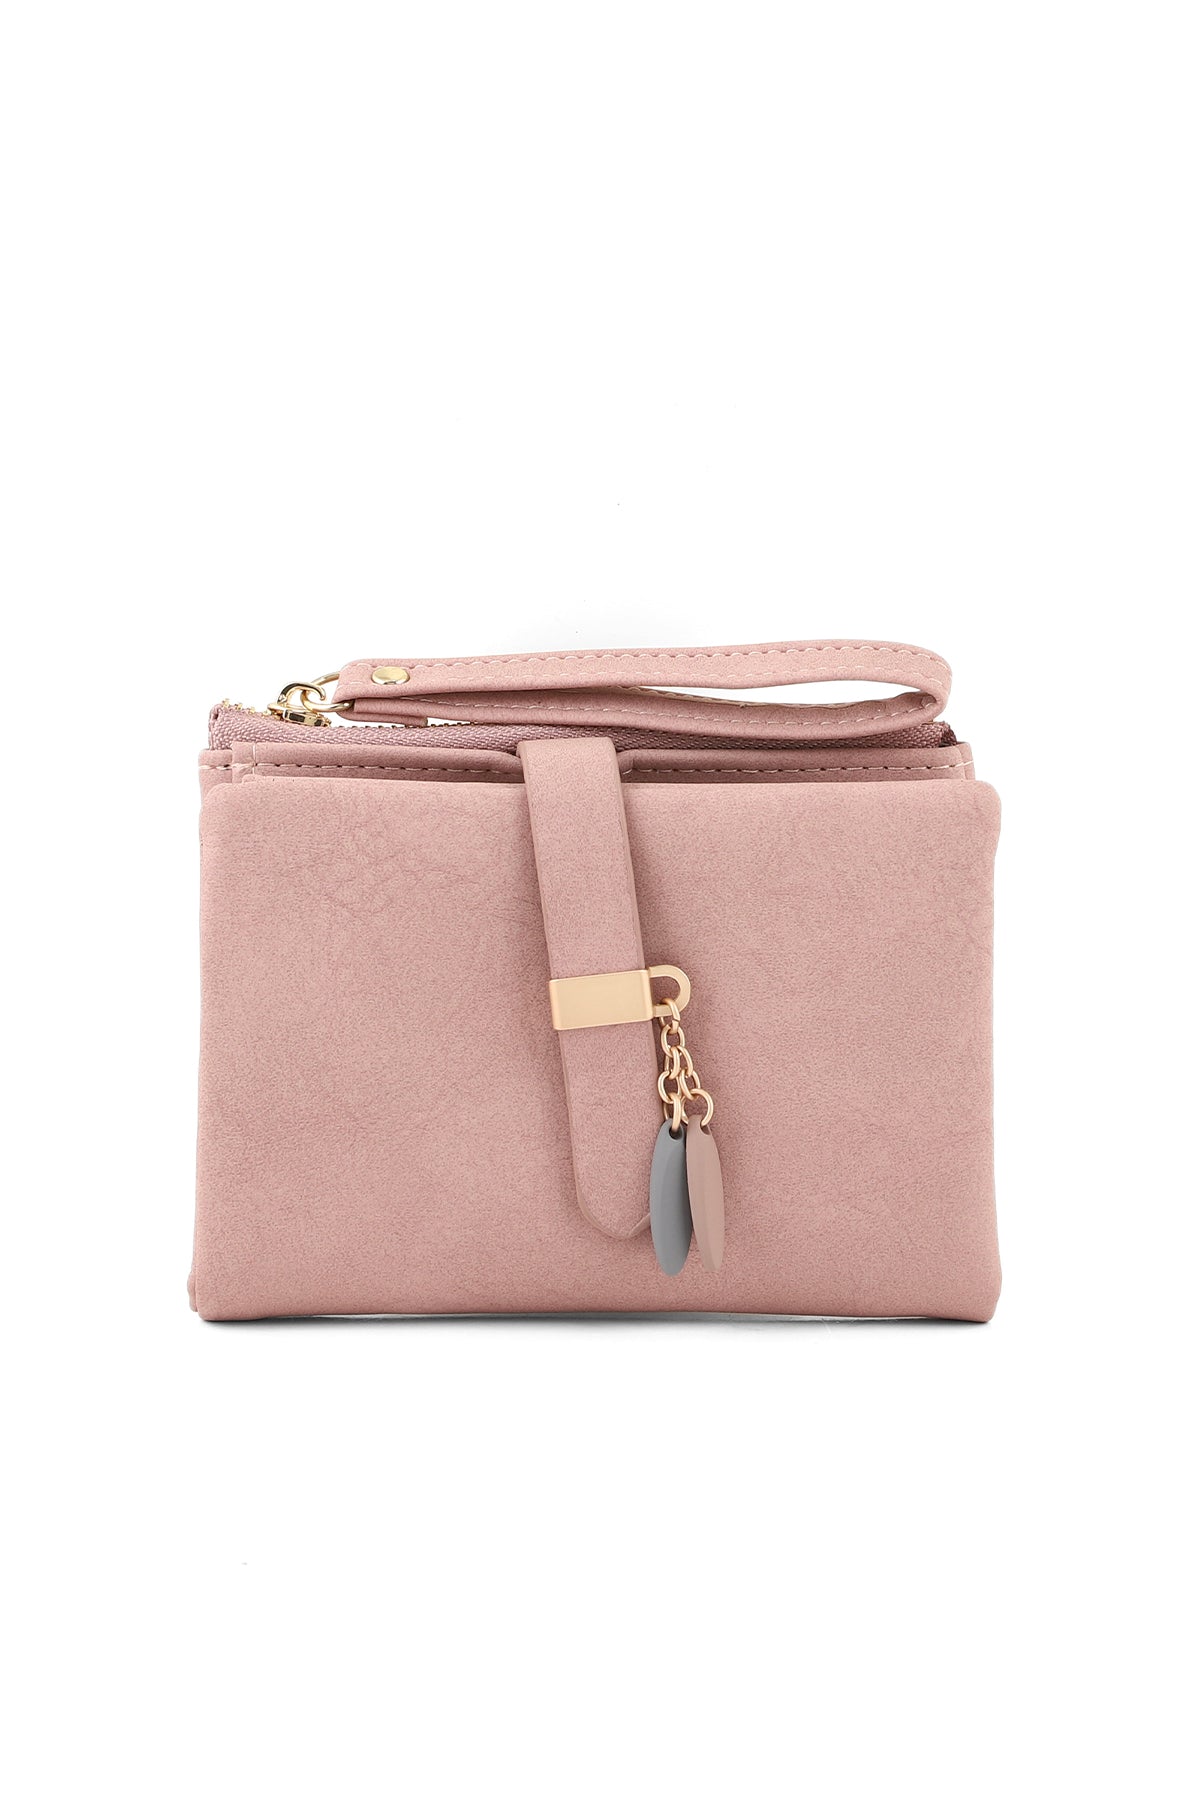 Wristlet Wallet B26037-Pink